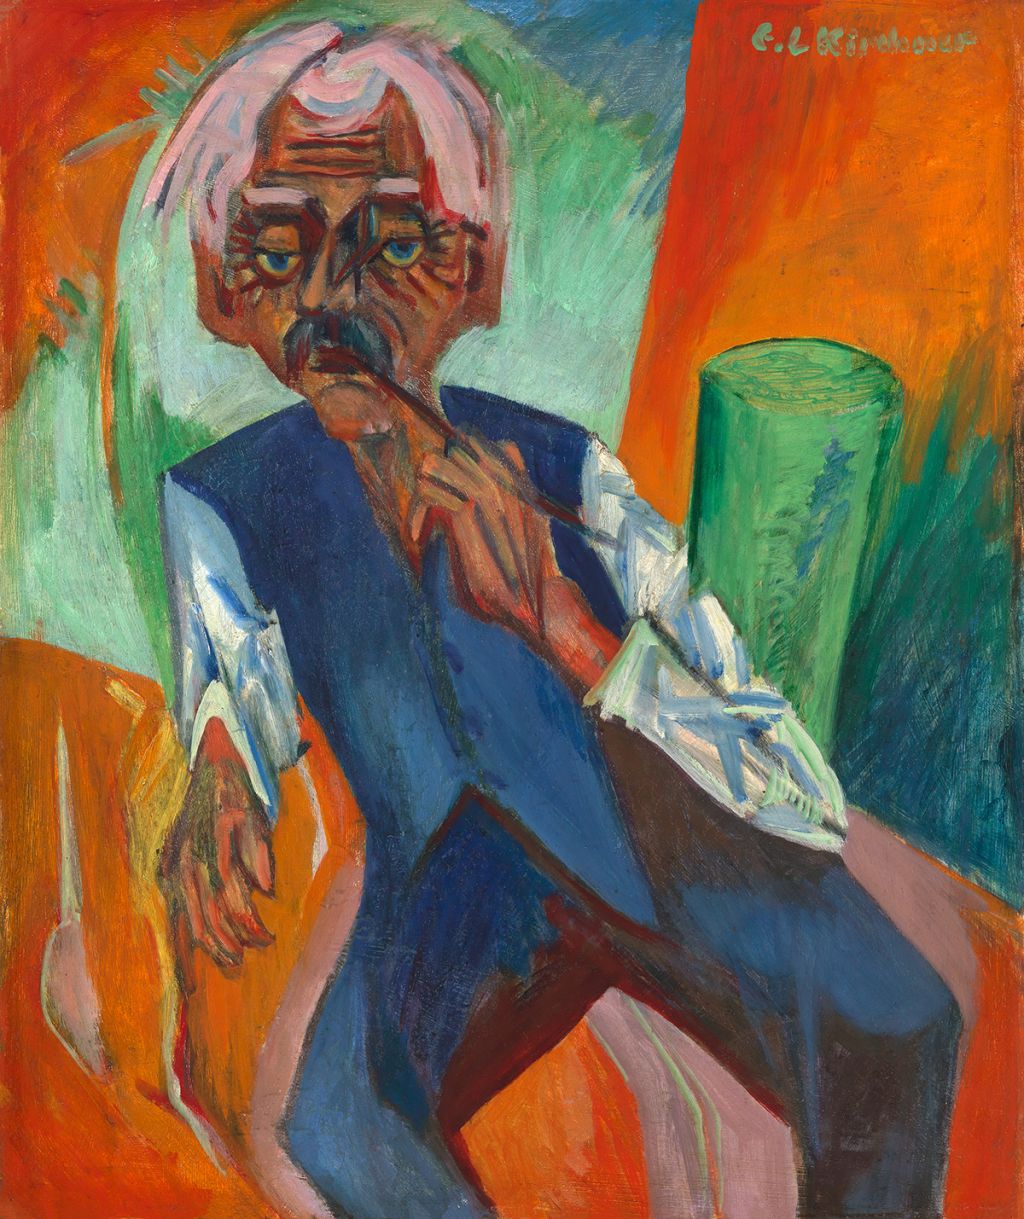 Abbildung: Ernst Ludwig Kirchner, Alter Bauer, 1919/20, Öl auf Leinwand, Buchheim Museum